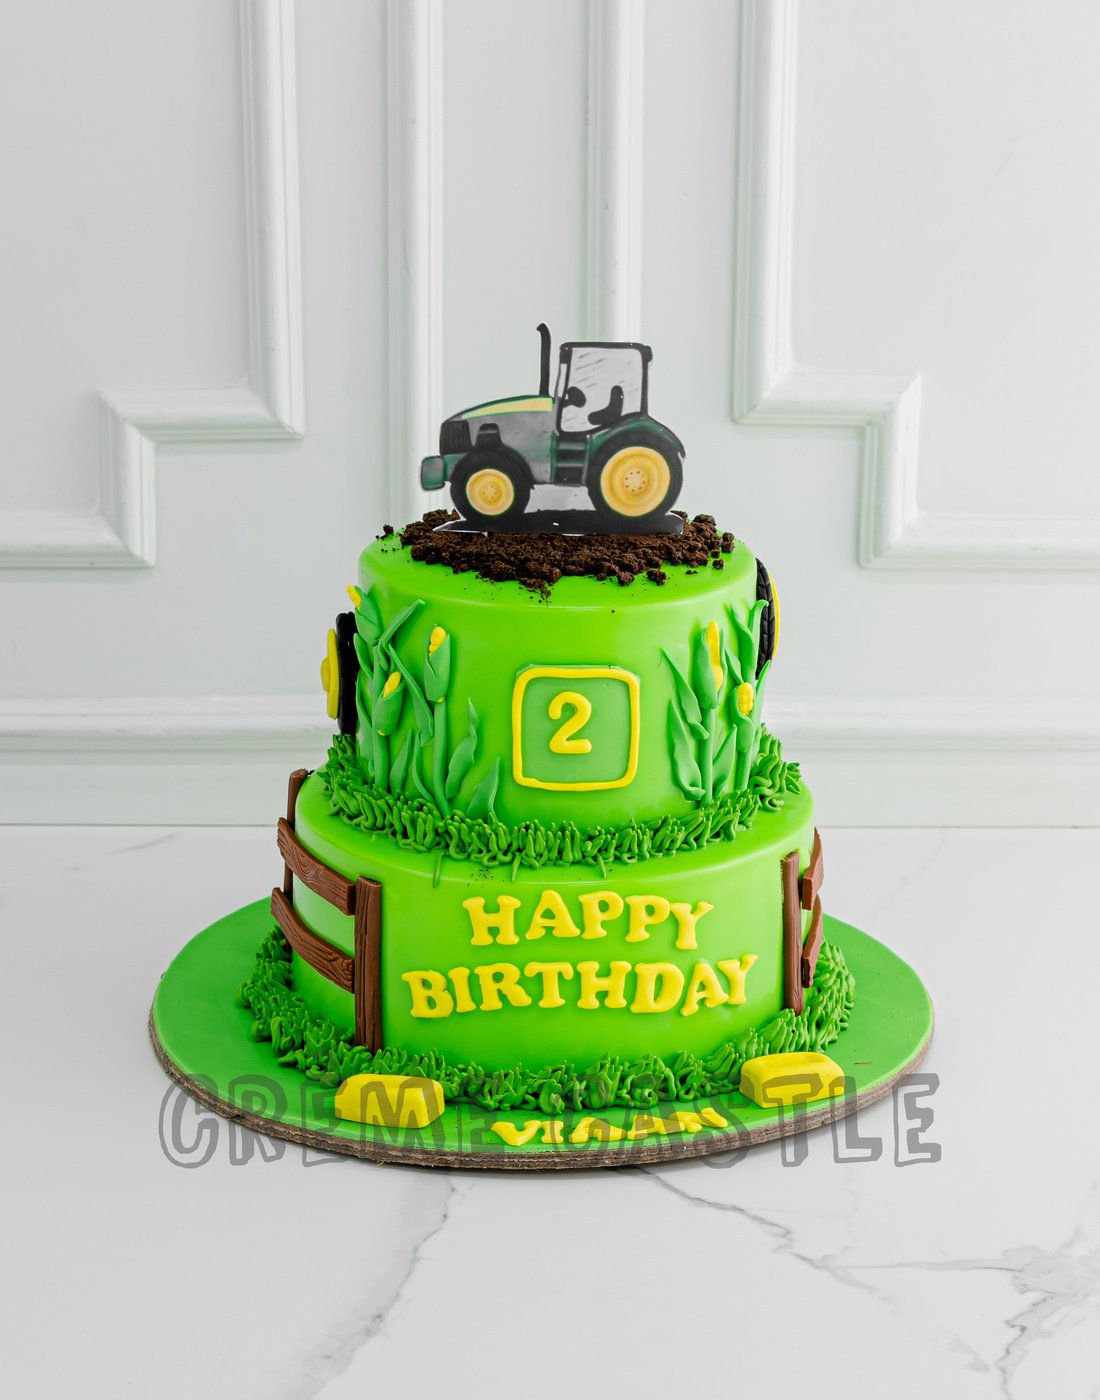 John Deere Tractor Cake Topper Tutorial - YouTube